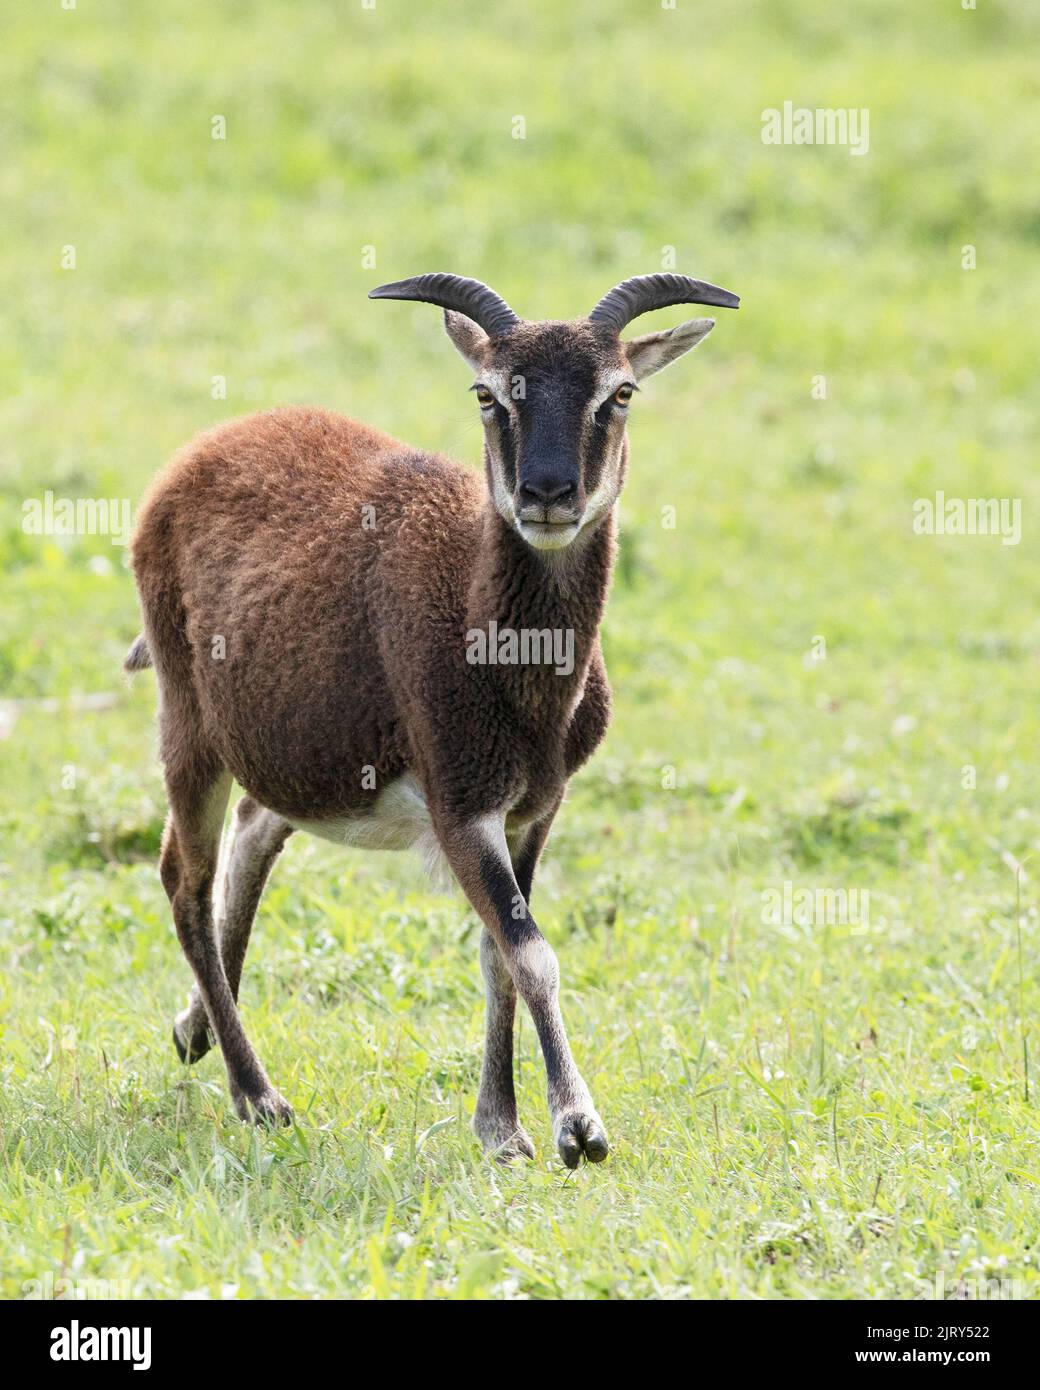 Soay Sheep ewe, eine seltene Tierrasse ähnlich den Vorfahren von Hausschafen, die auf einer historischen Farm in Kanada auf Grassweiden wandern. Ovis aries Stockfoto